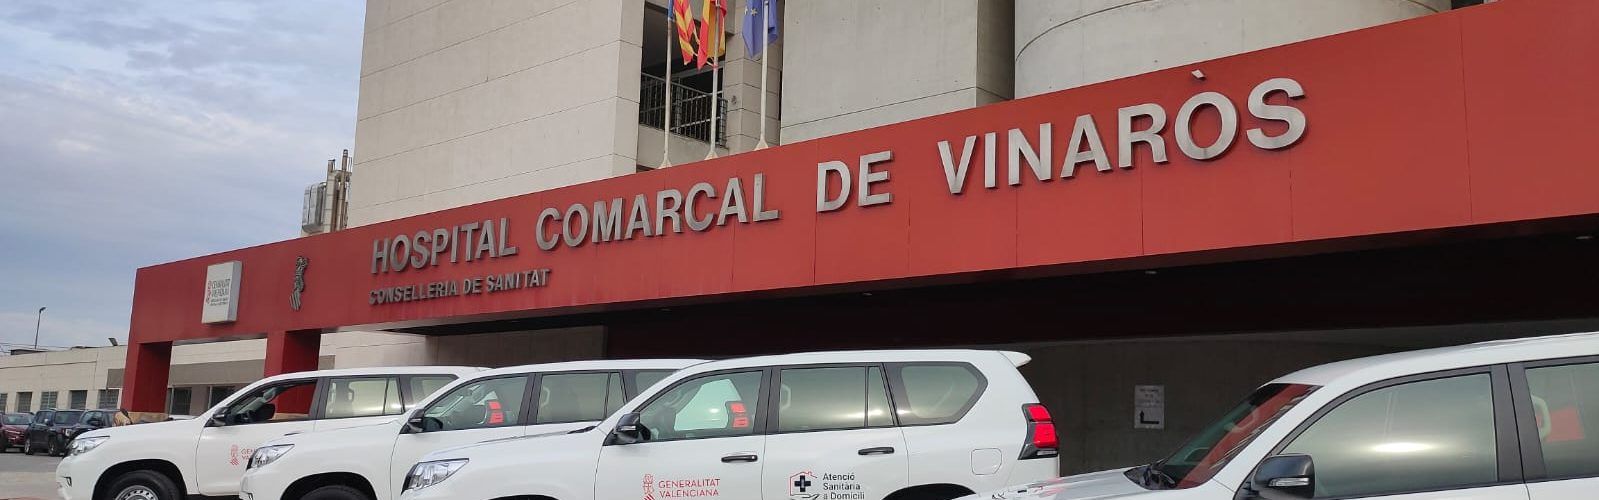 Nueve vehículos todoterreno para atenciones a domicilio en Forcall, Morella, Sant Mateu, Traiguera, Atzeneta, Albocàsser, Llucena, Villahermosa y Vilafranca